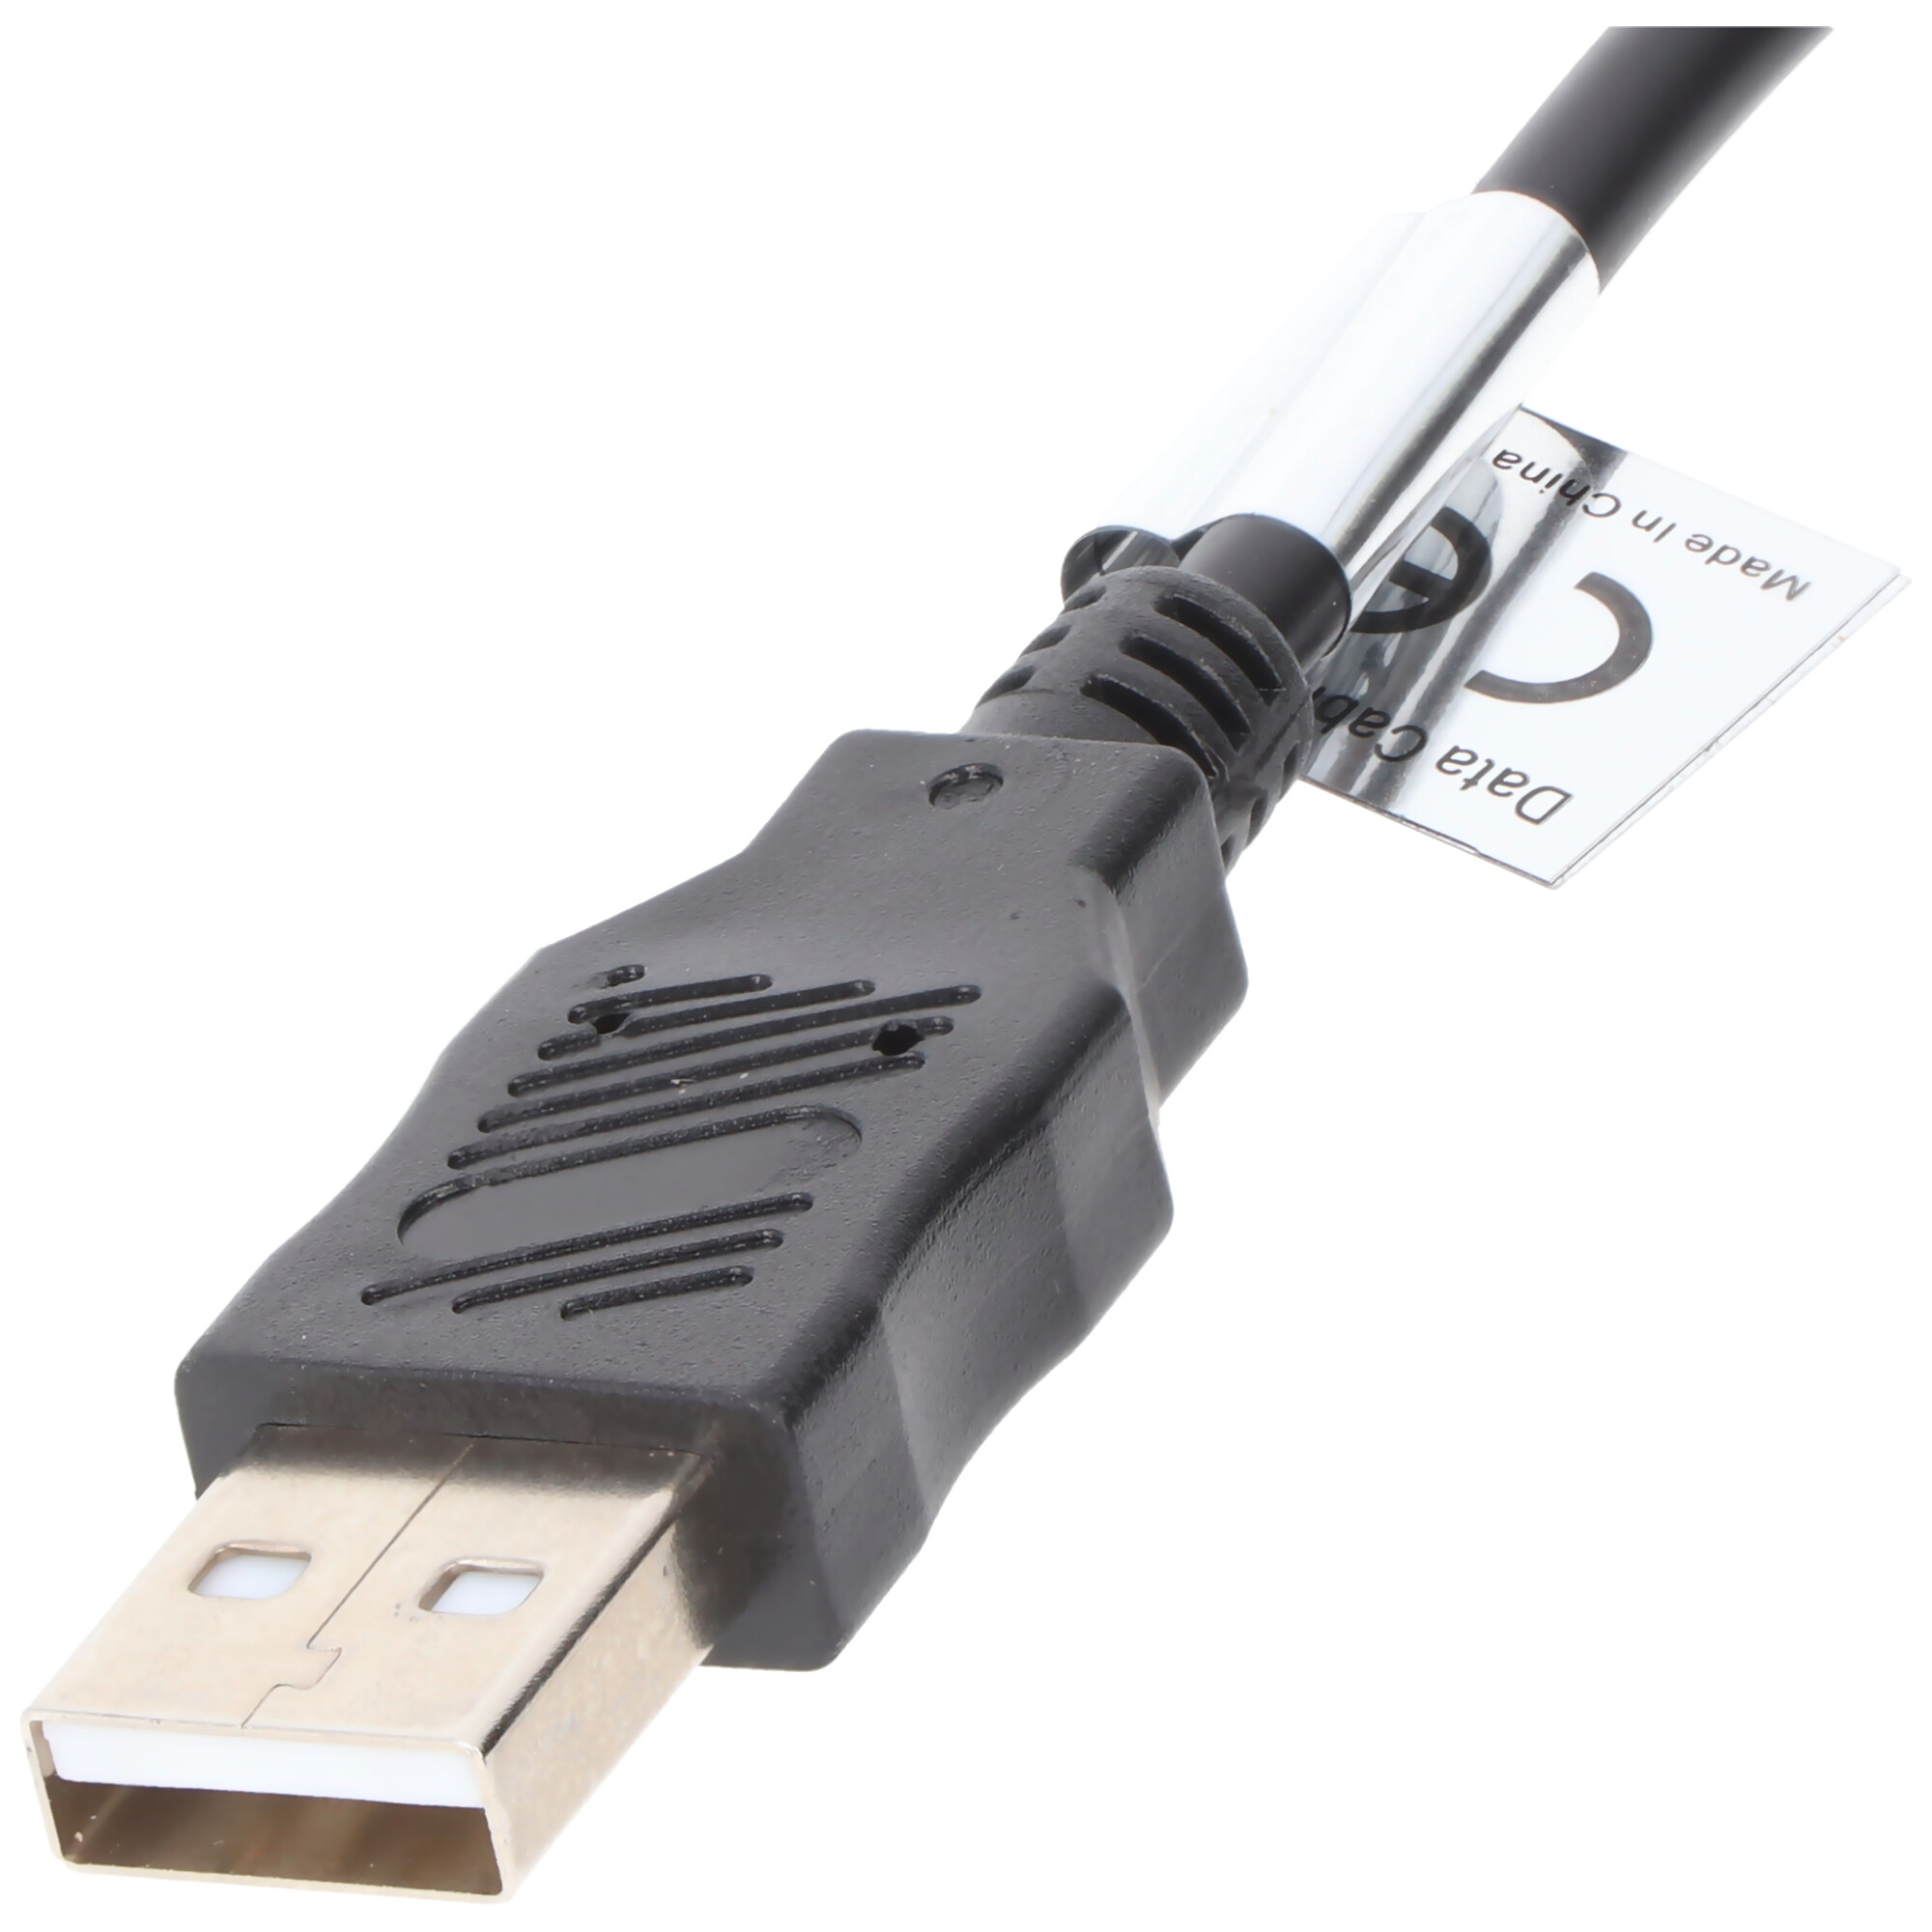 USB-Verbindungskabel passend für die Panasonic Lumix DMC-FT1, DMC-FT2, DMC-FZ38, DMC-GH1, DMC-TZ6, DMC-TZ7, DMC-TZ10